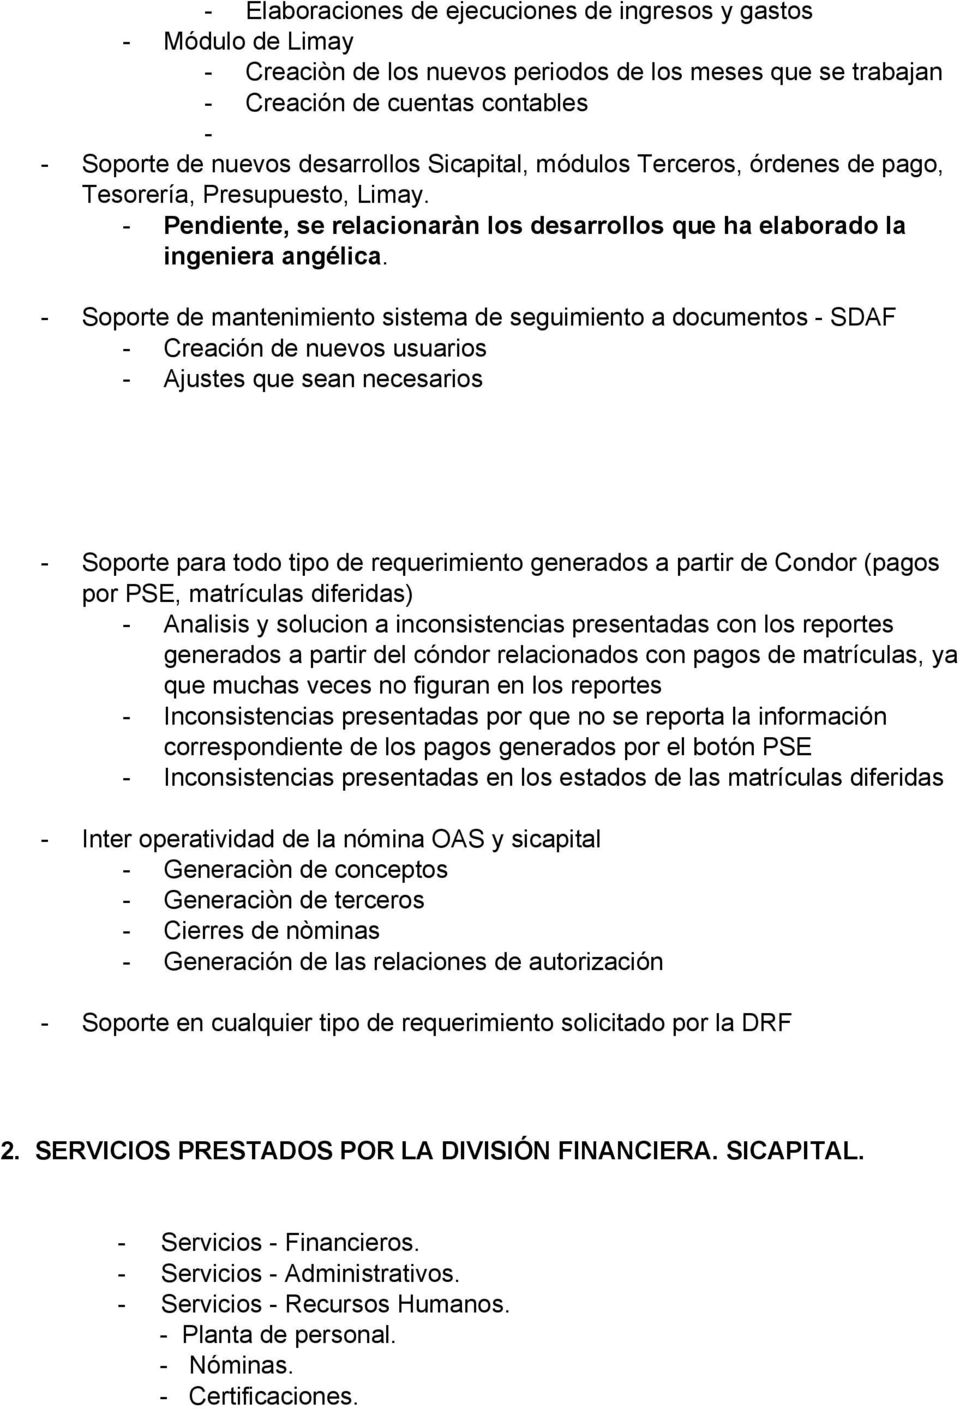 Soporte de mantenimiento sistema de seguimiento a documentos SDAF Creación de nuevos usuarios Ajustes que sean necesarios Soporte para todo tipo de requerimiento generados a partir de Condor (pagos